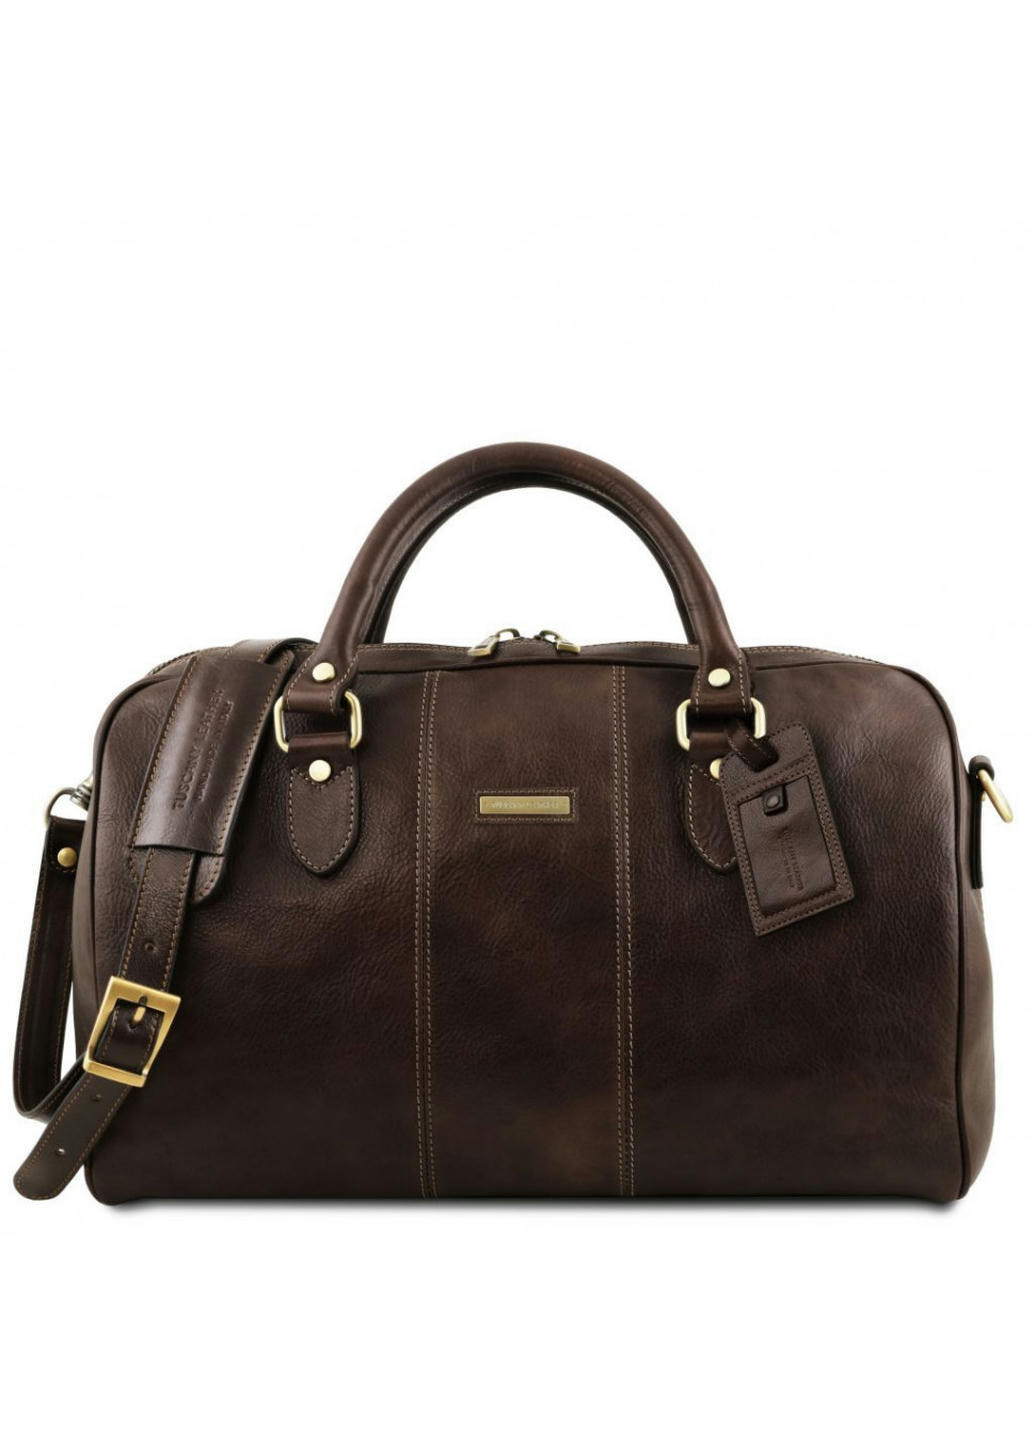 Lisbona Дорожная кожаная сумка-даффл - Маленький размер Tuscany TL141658 (Темно-коричневый) Tuscany Leather (257657395)